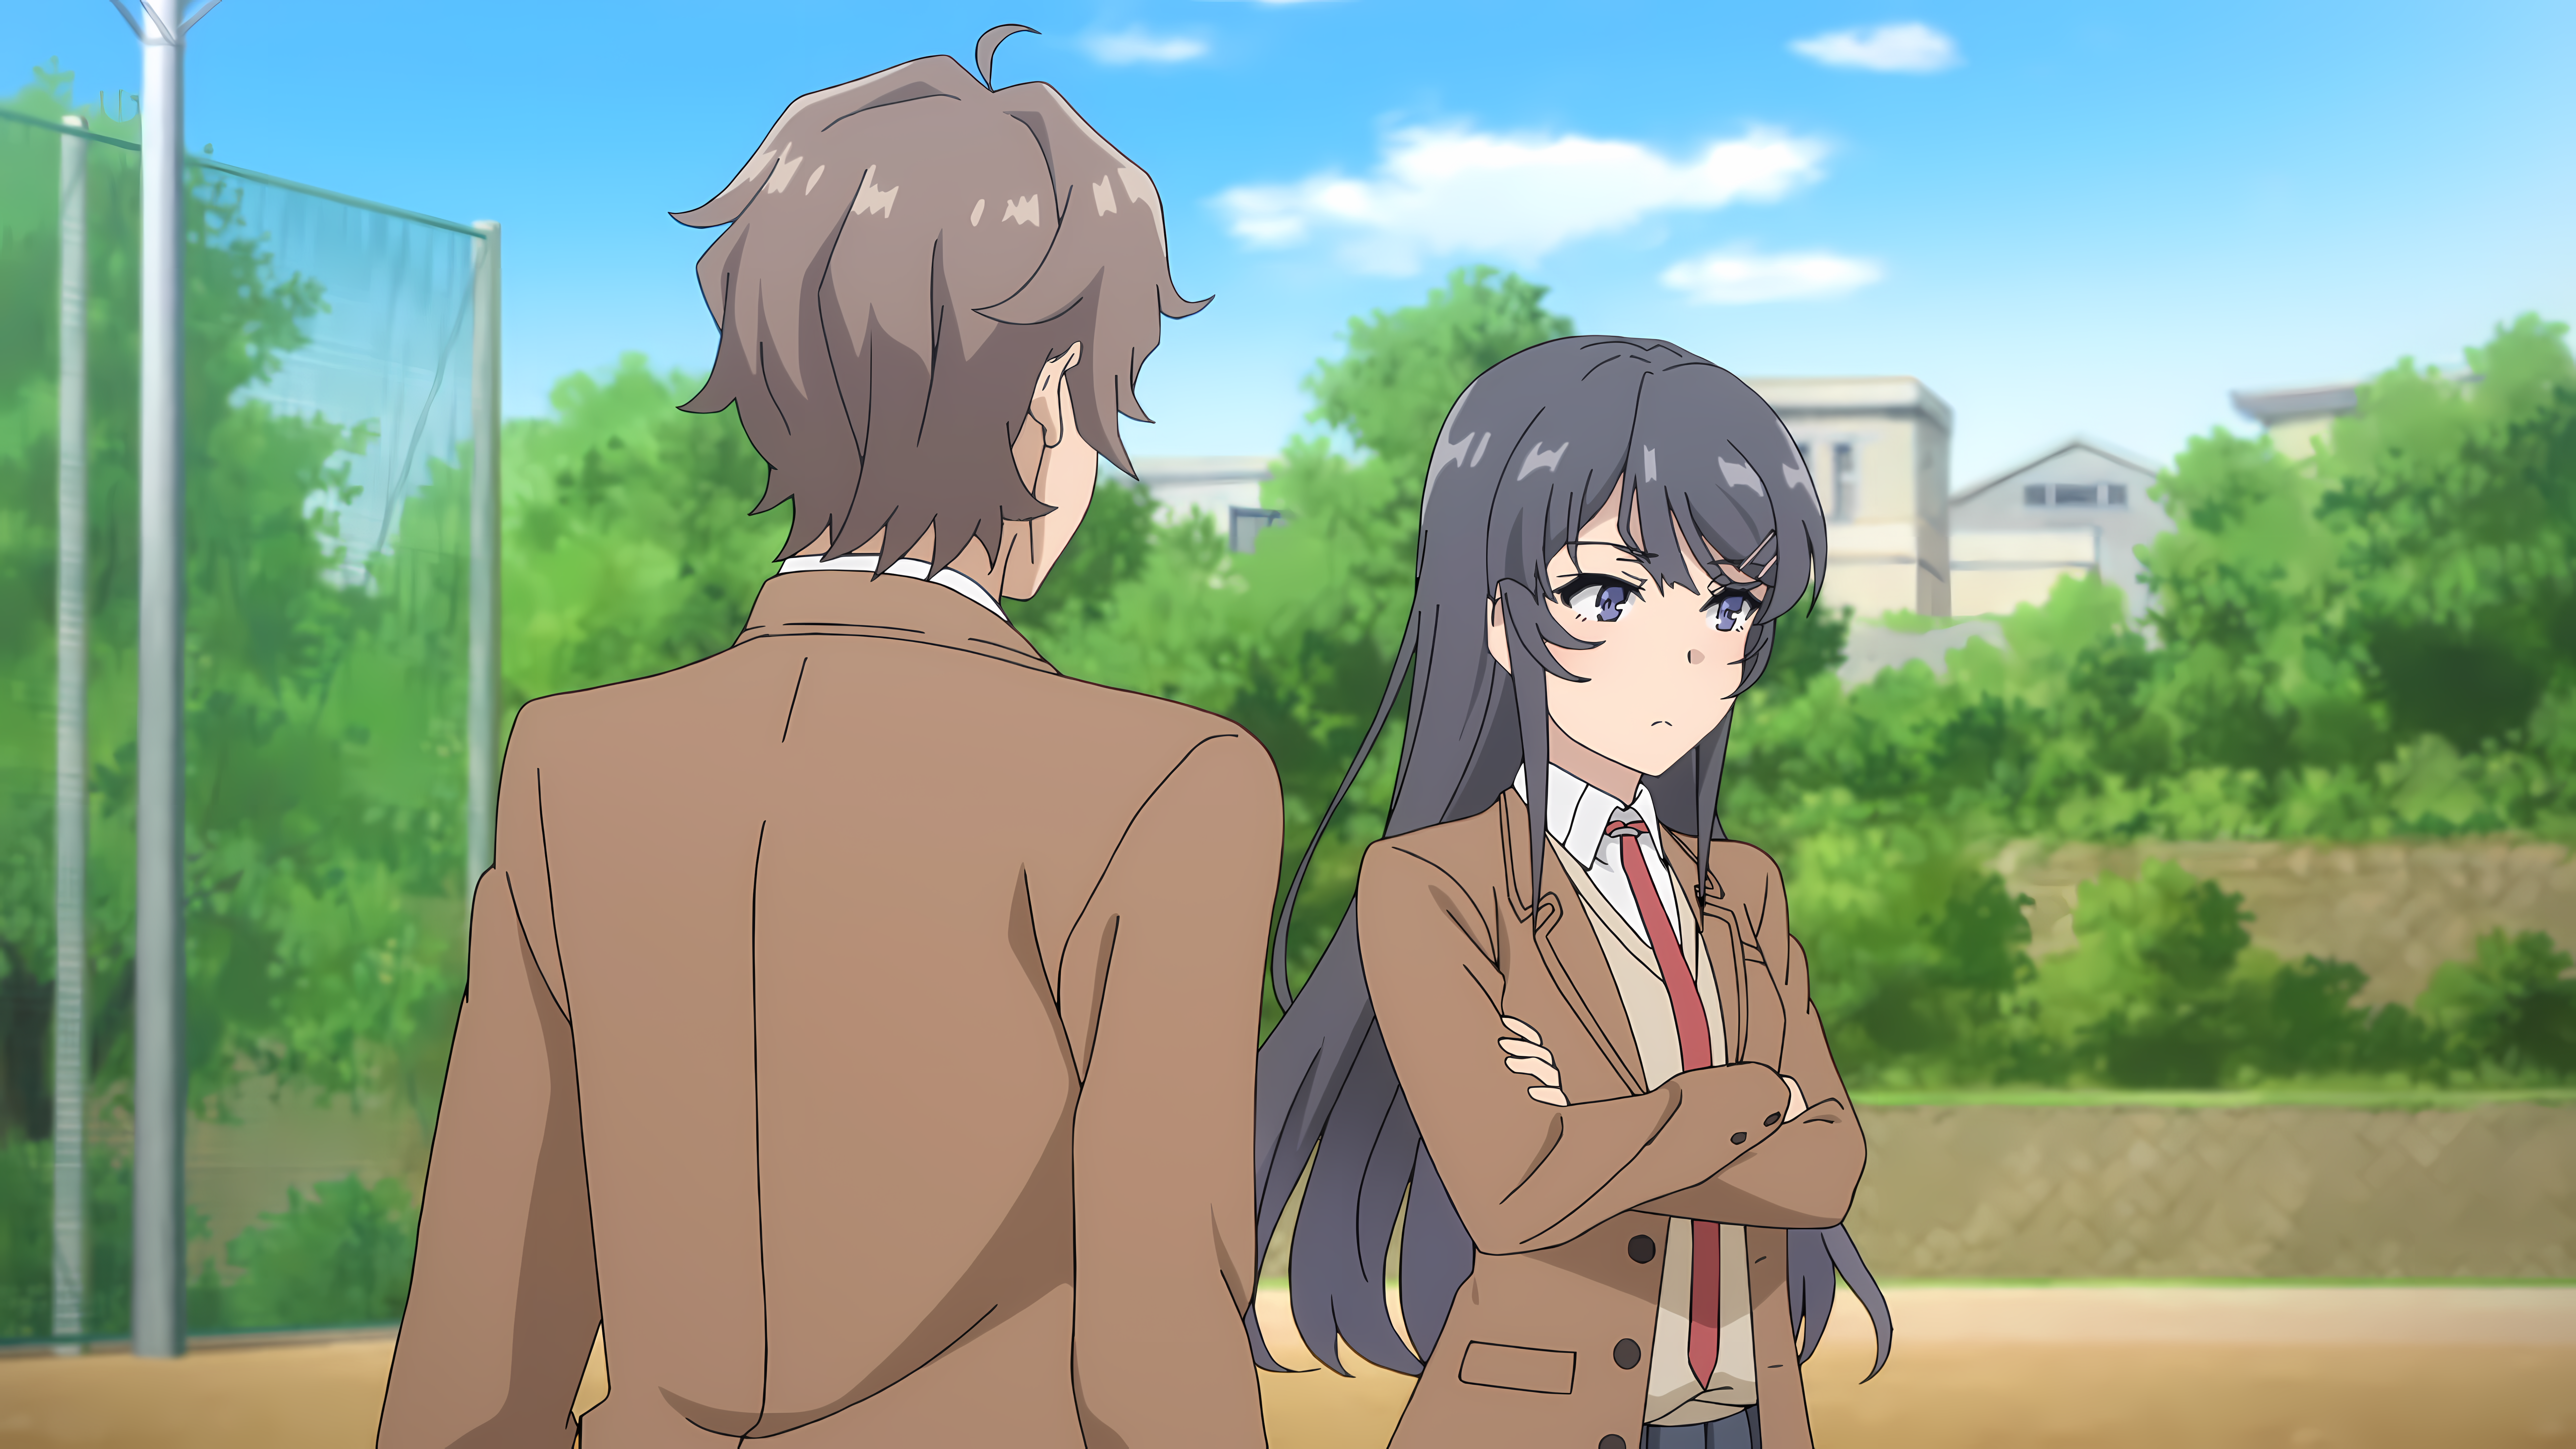 Sakurajima Mai Seishun Buta Yar Wa Bunny Girl Senpai No Yume Wo Minai Anime Anime Girls Anime Boys A 7680x4320